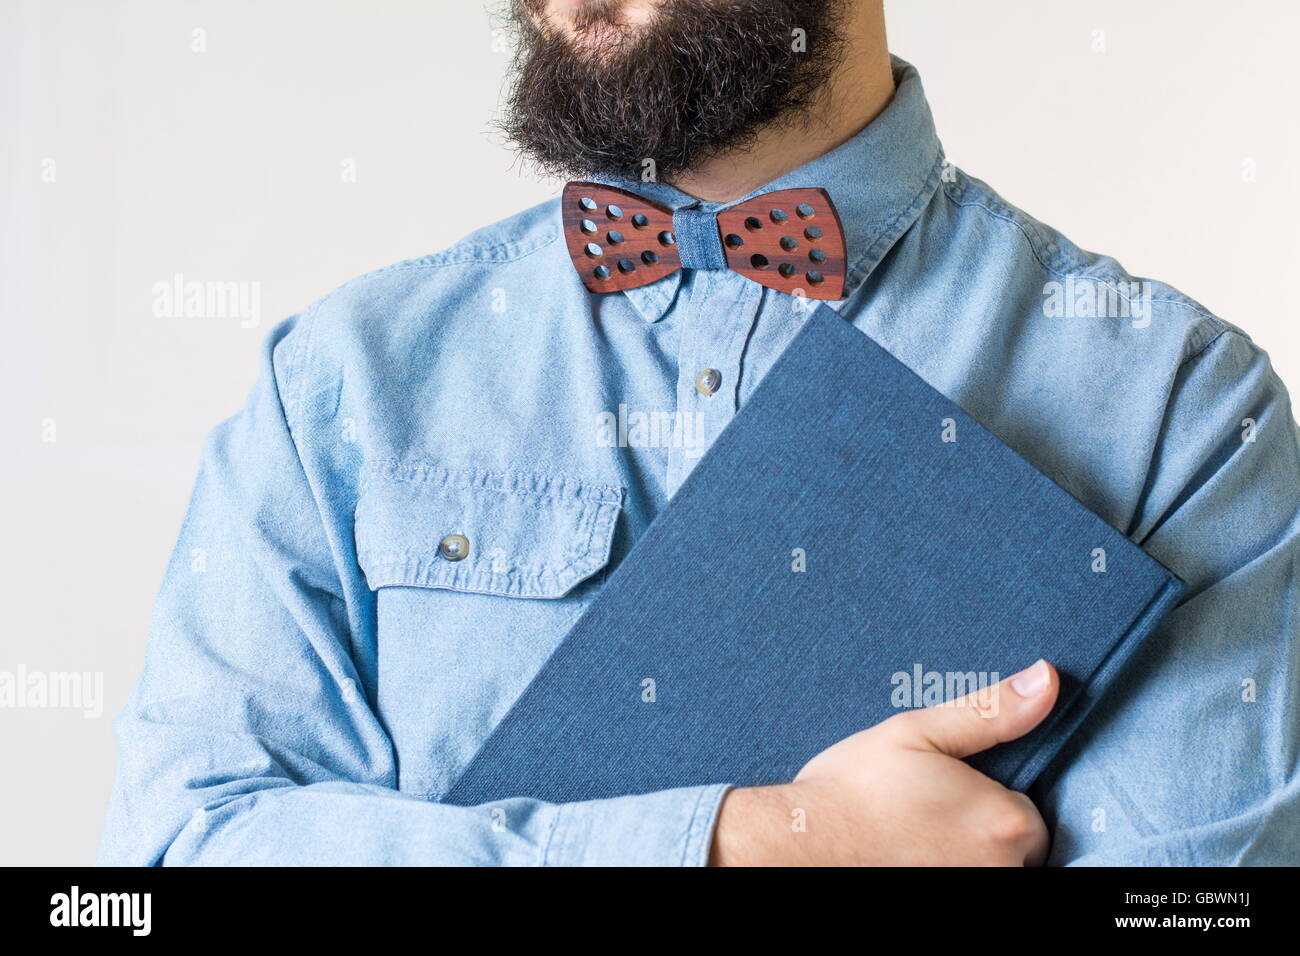 Bärtiger Mann mit einer hölzernen Fliege hält ein blaues Notizbuch Stockfoto